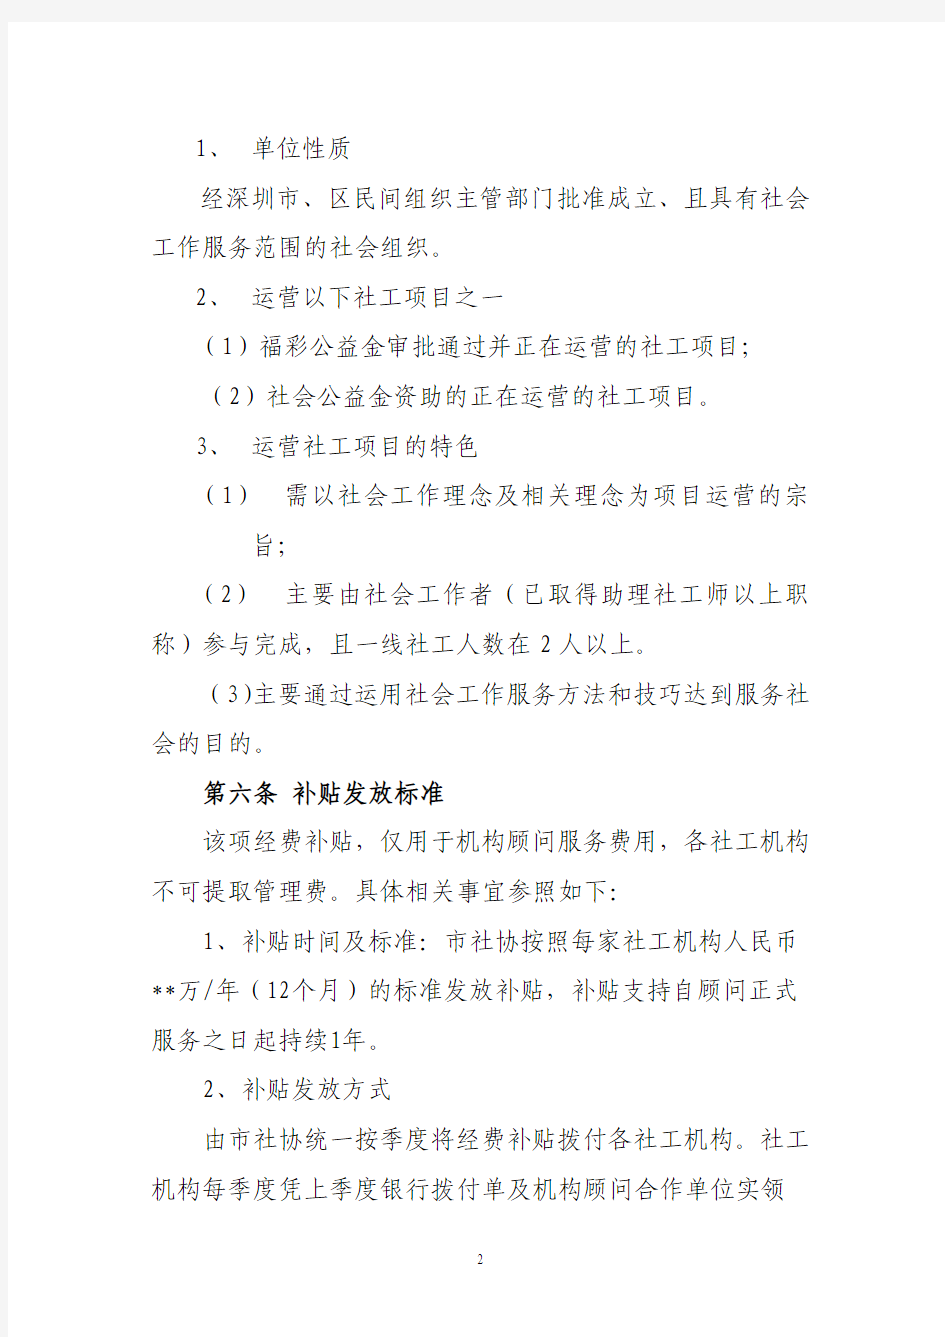 深圳市社会工作服务机构聘请顾问管理办法(试行)